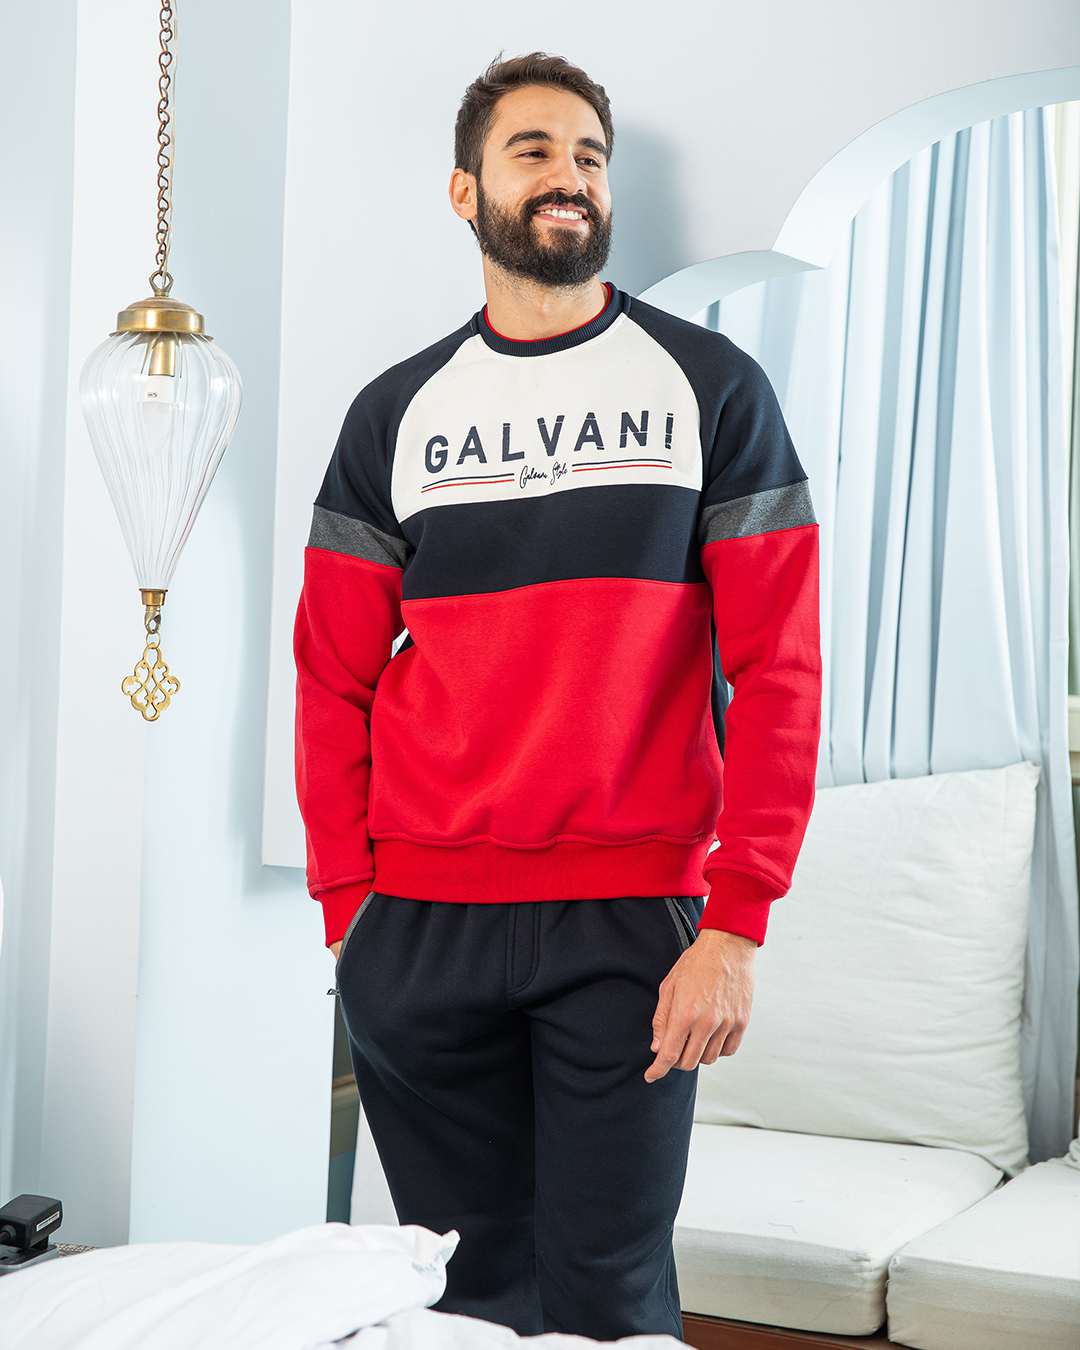 Galvani men's pajamas, rhubarb print